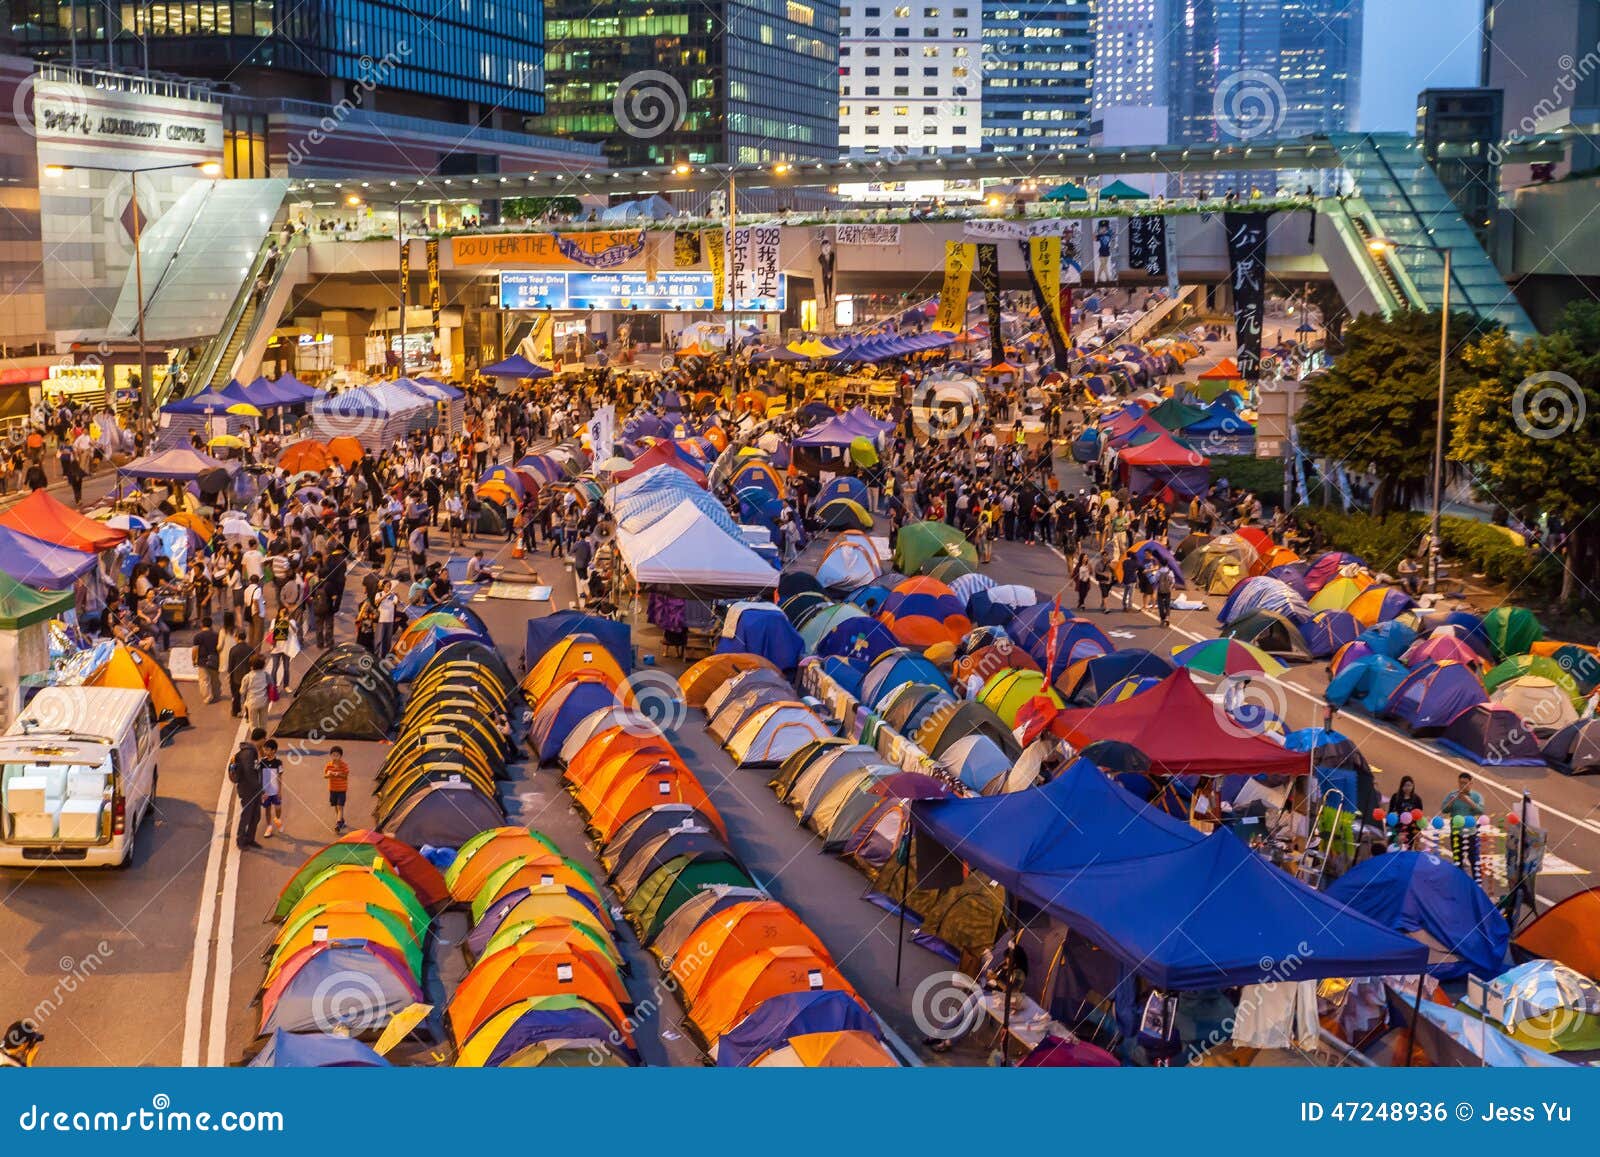 Revolução do guarda-chuva em Hong Kong 2014. HONG KONG, O 24 DE OUTUBRO: Revolução do guarda-chuva em Admiralty o 24 de outubro de 2014 Os povos de Hong Kong estão lutando por um sufrágio universal genuíno para a eleição seguinte do diretor-executivo